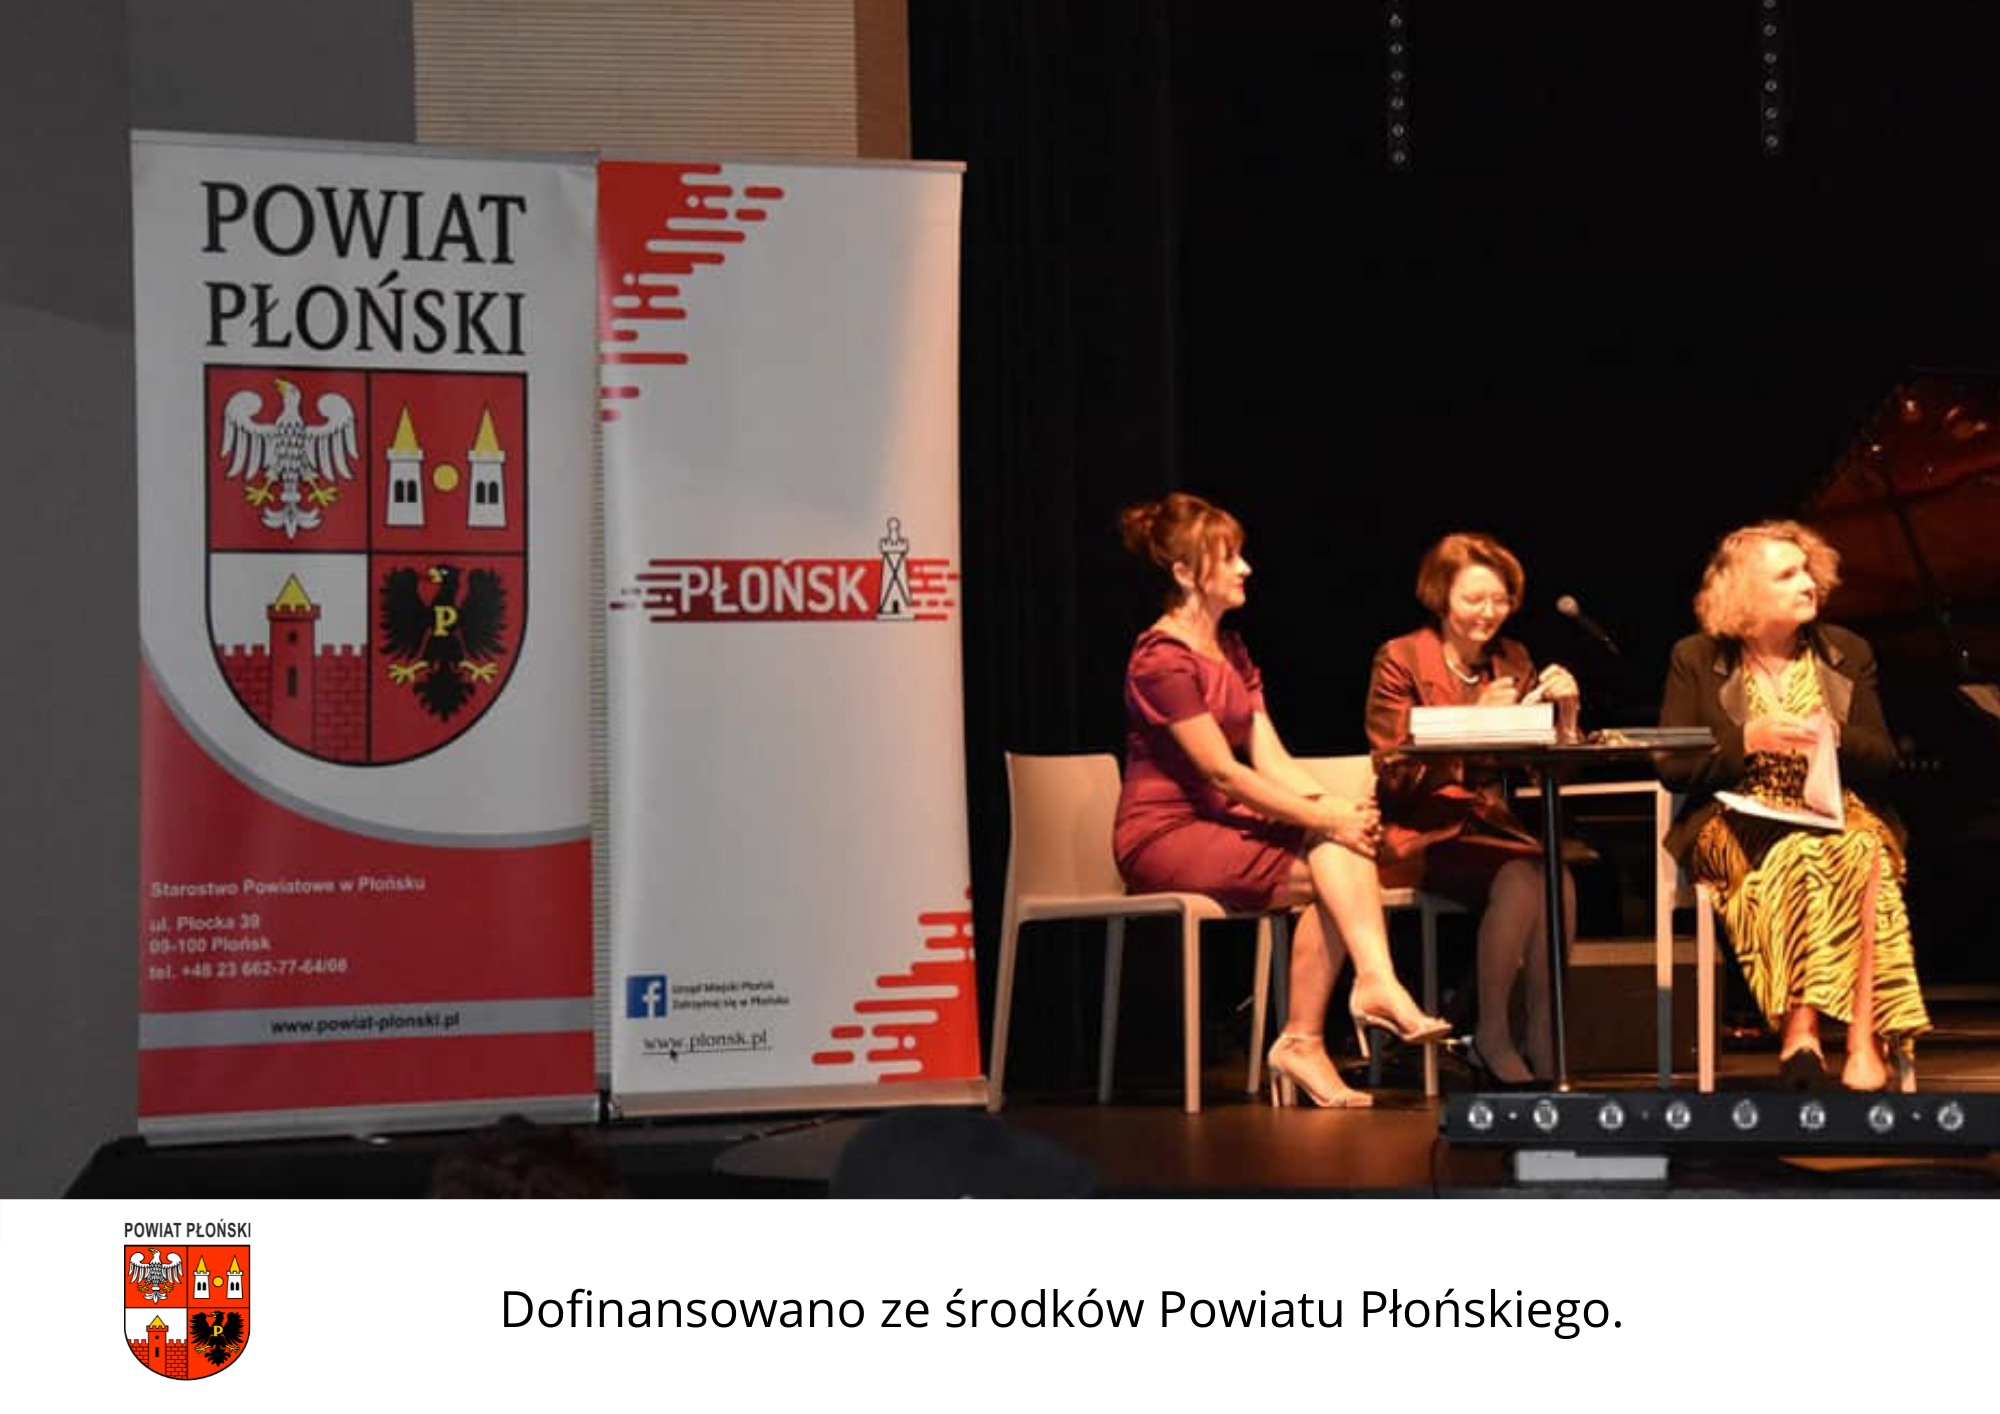 Widok na scenę teatralno-kinową. Po lewej stronie stoją obok siebie dwa rollupy - powiatu płońskiego i miasta Płońsk, po prawej przy stoliku siedzą trzy osoby.